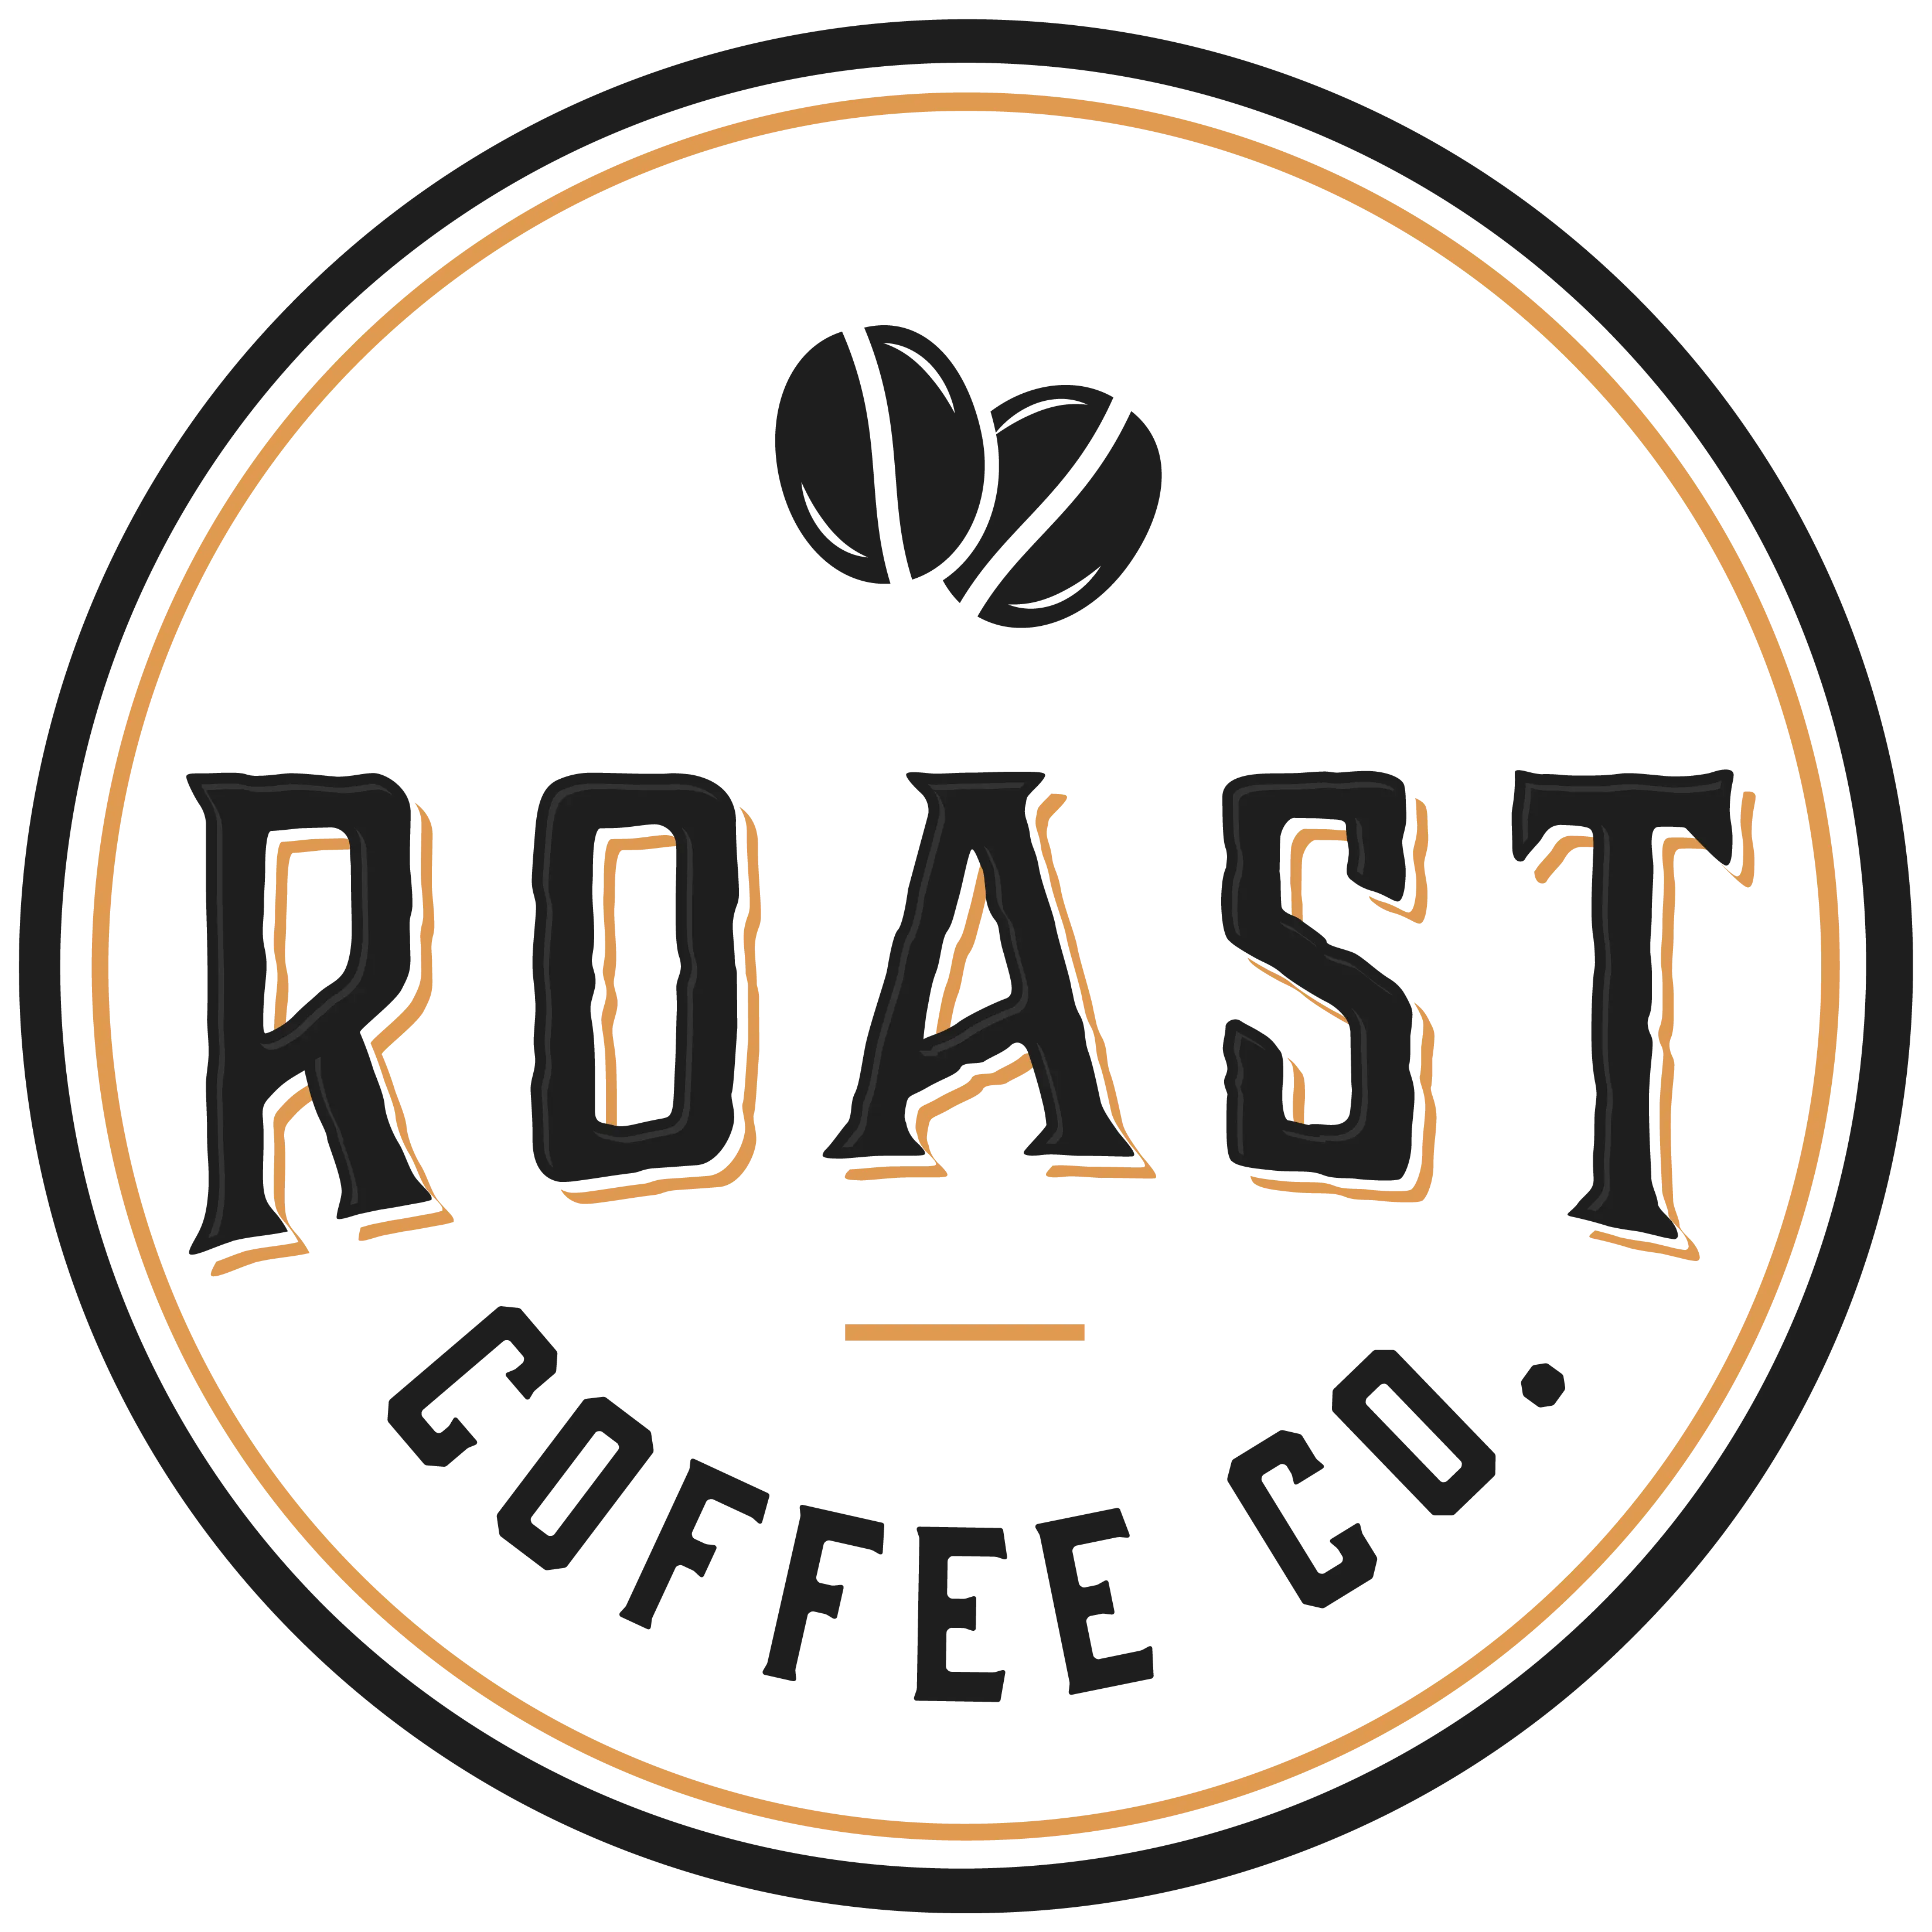 roast coffee co app logo